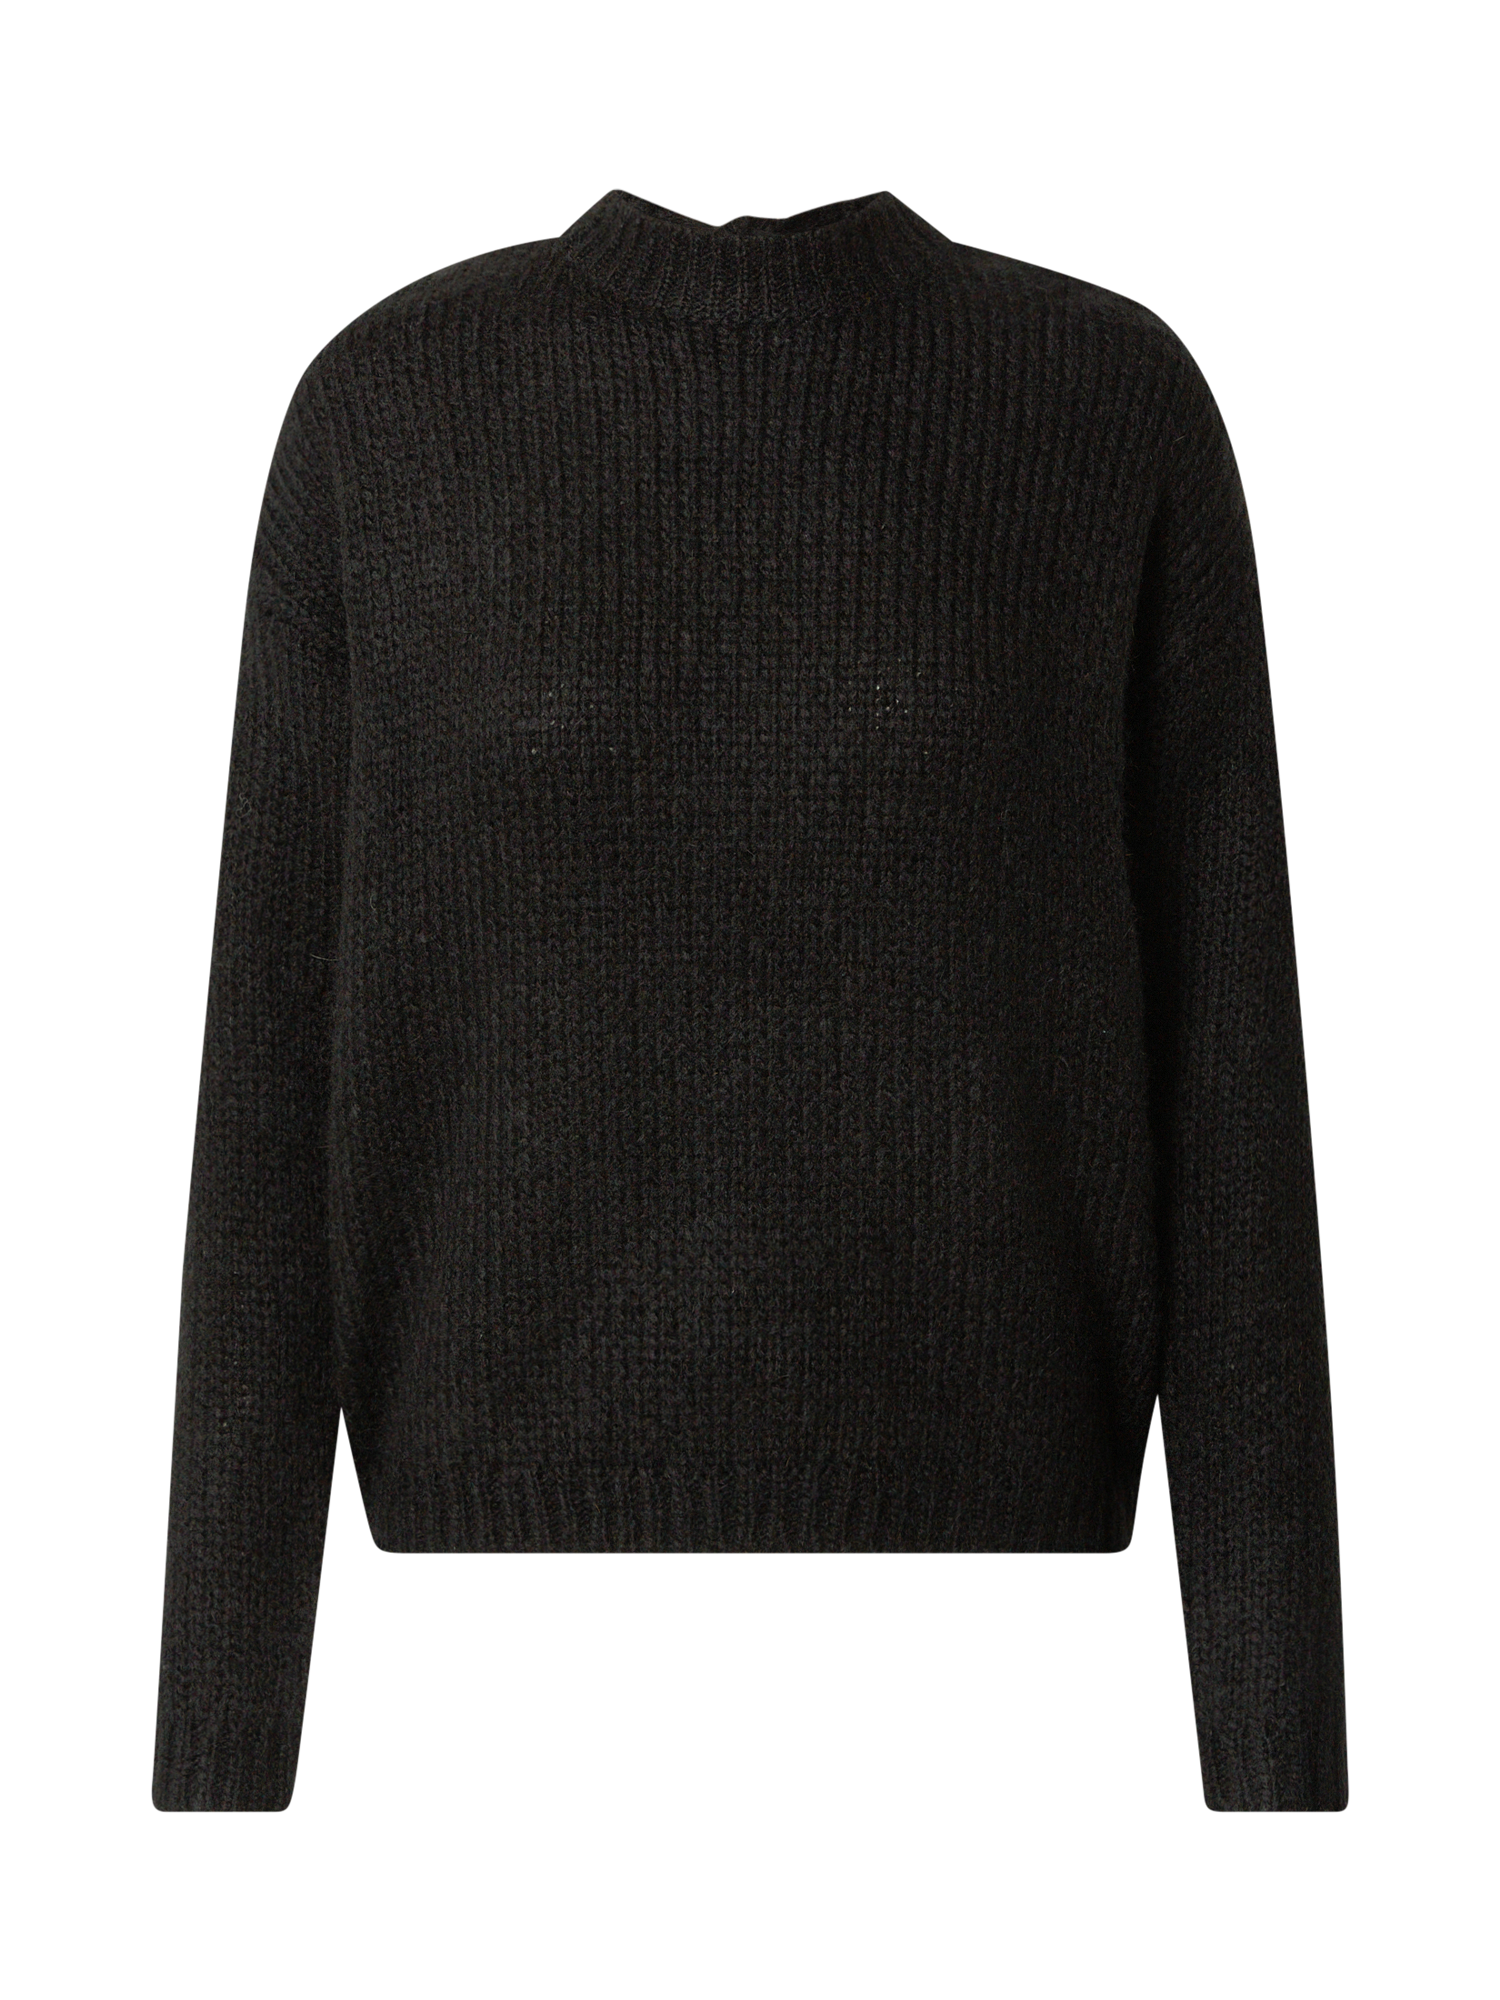 Swetry & dzianina Odzież VERO MODA Sweter Darya w kolorze Czarnym 